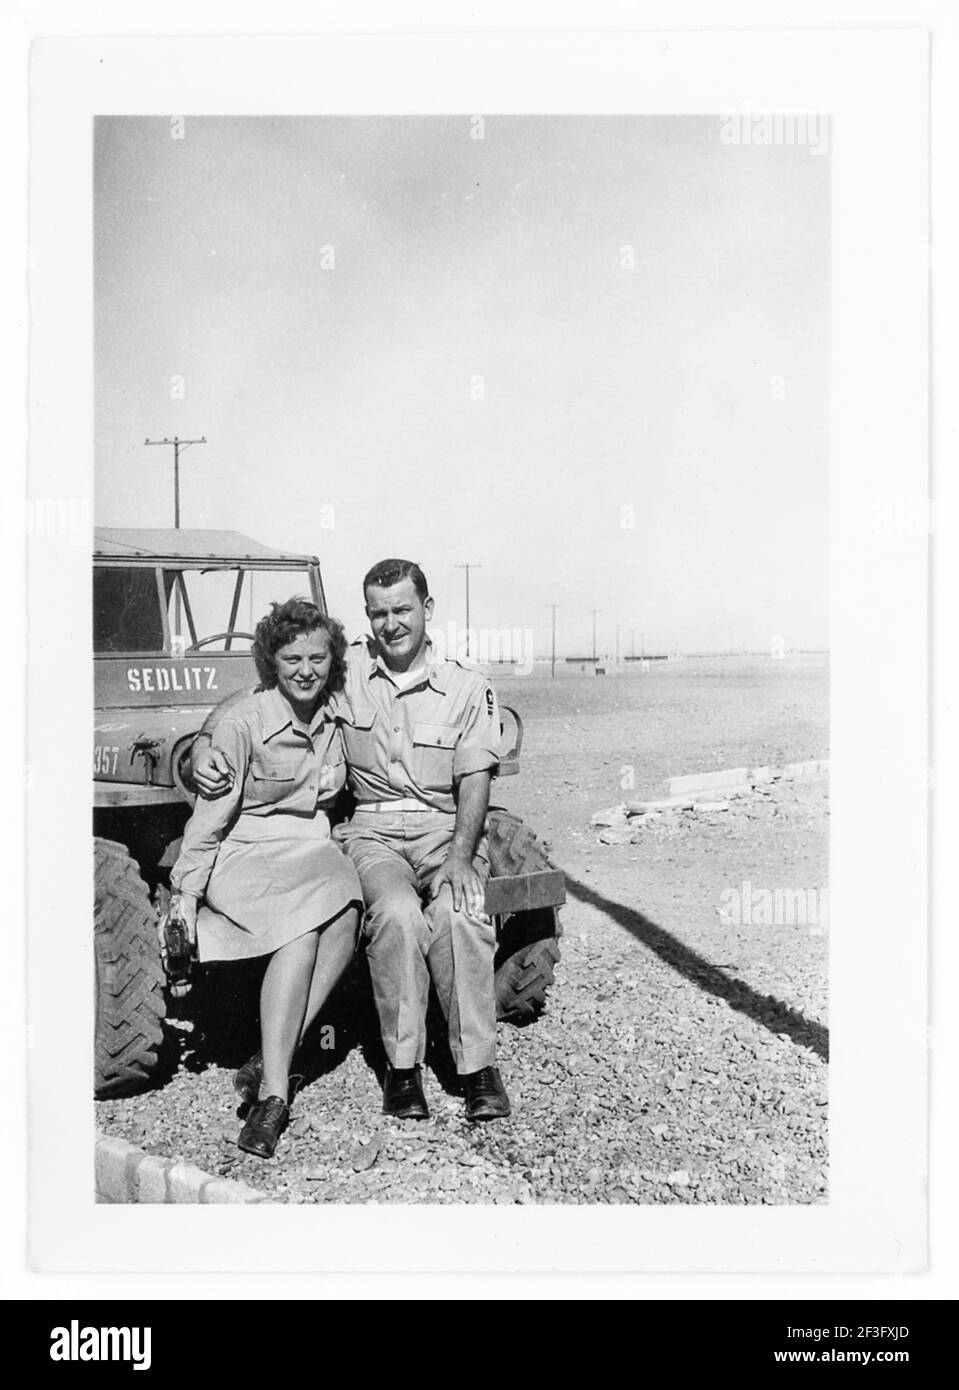 Soldado del Ejército y un WAC, Camp Huckstep, Egipto, 1944 Ejército de los EE.UU Foto de stock